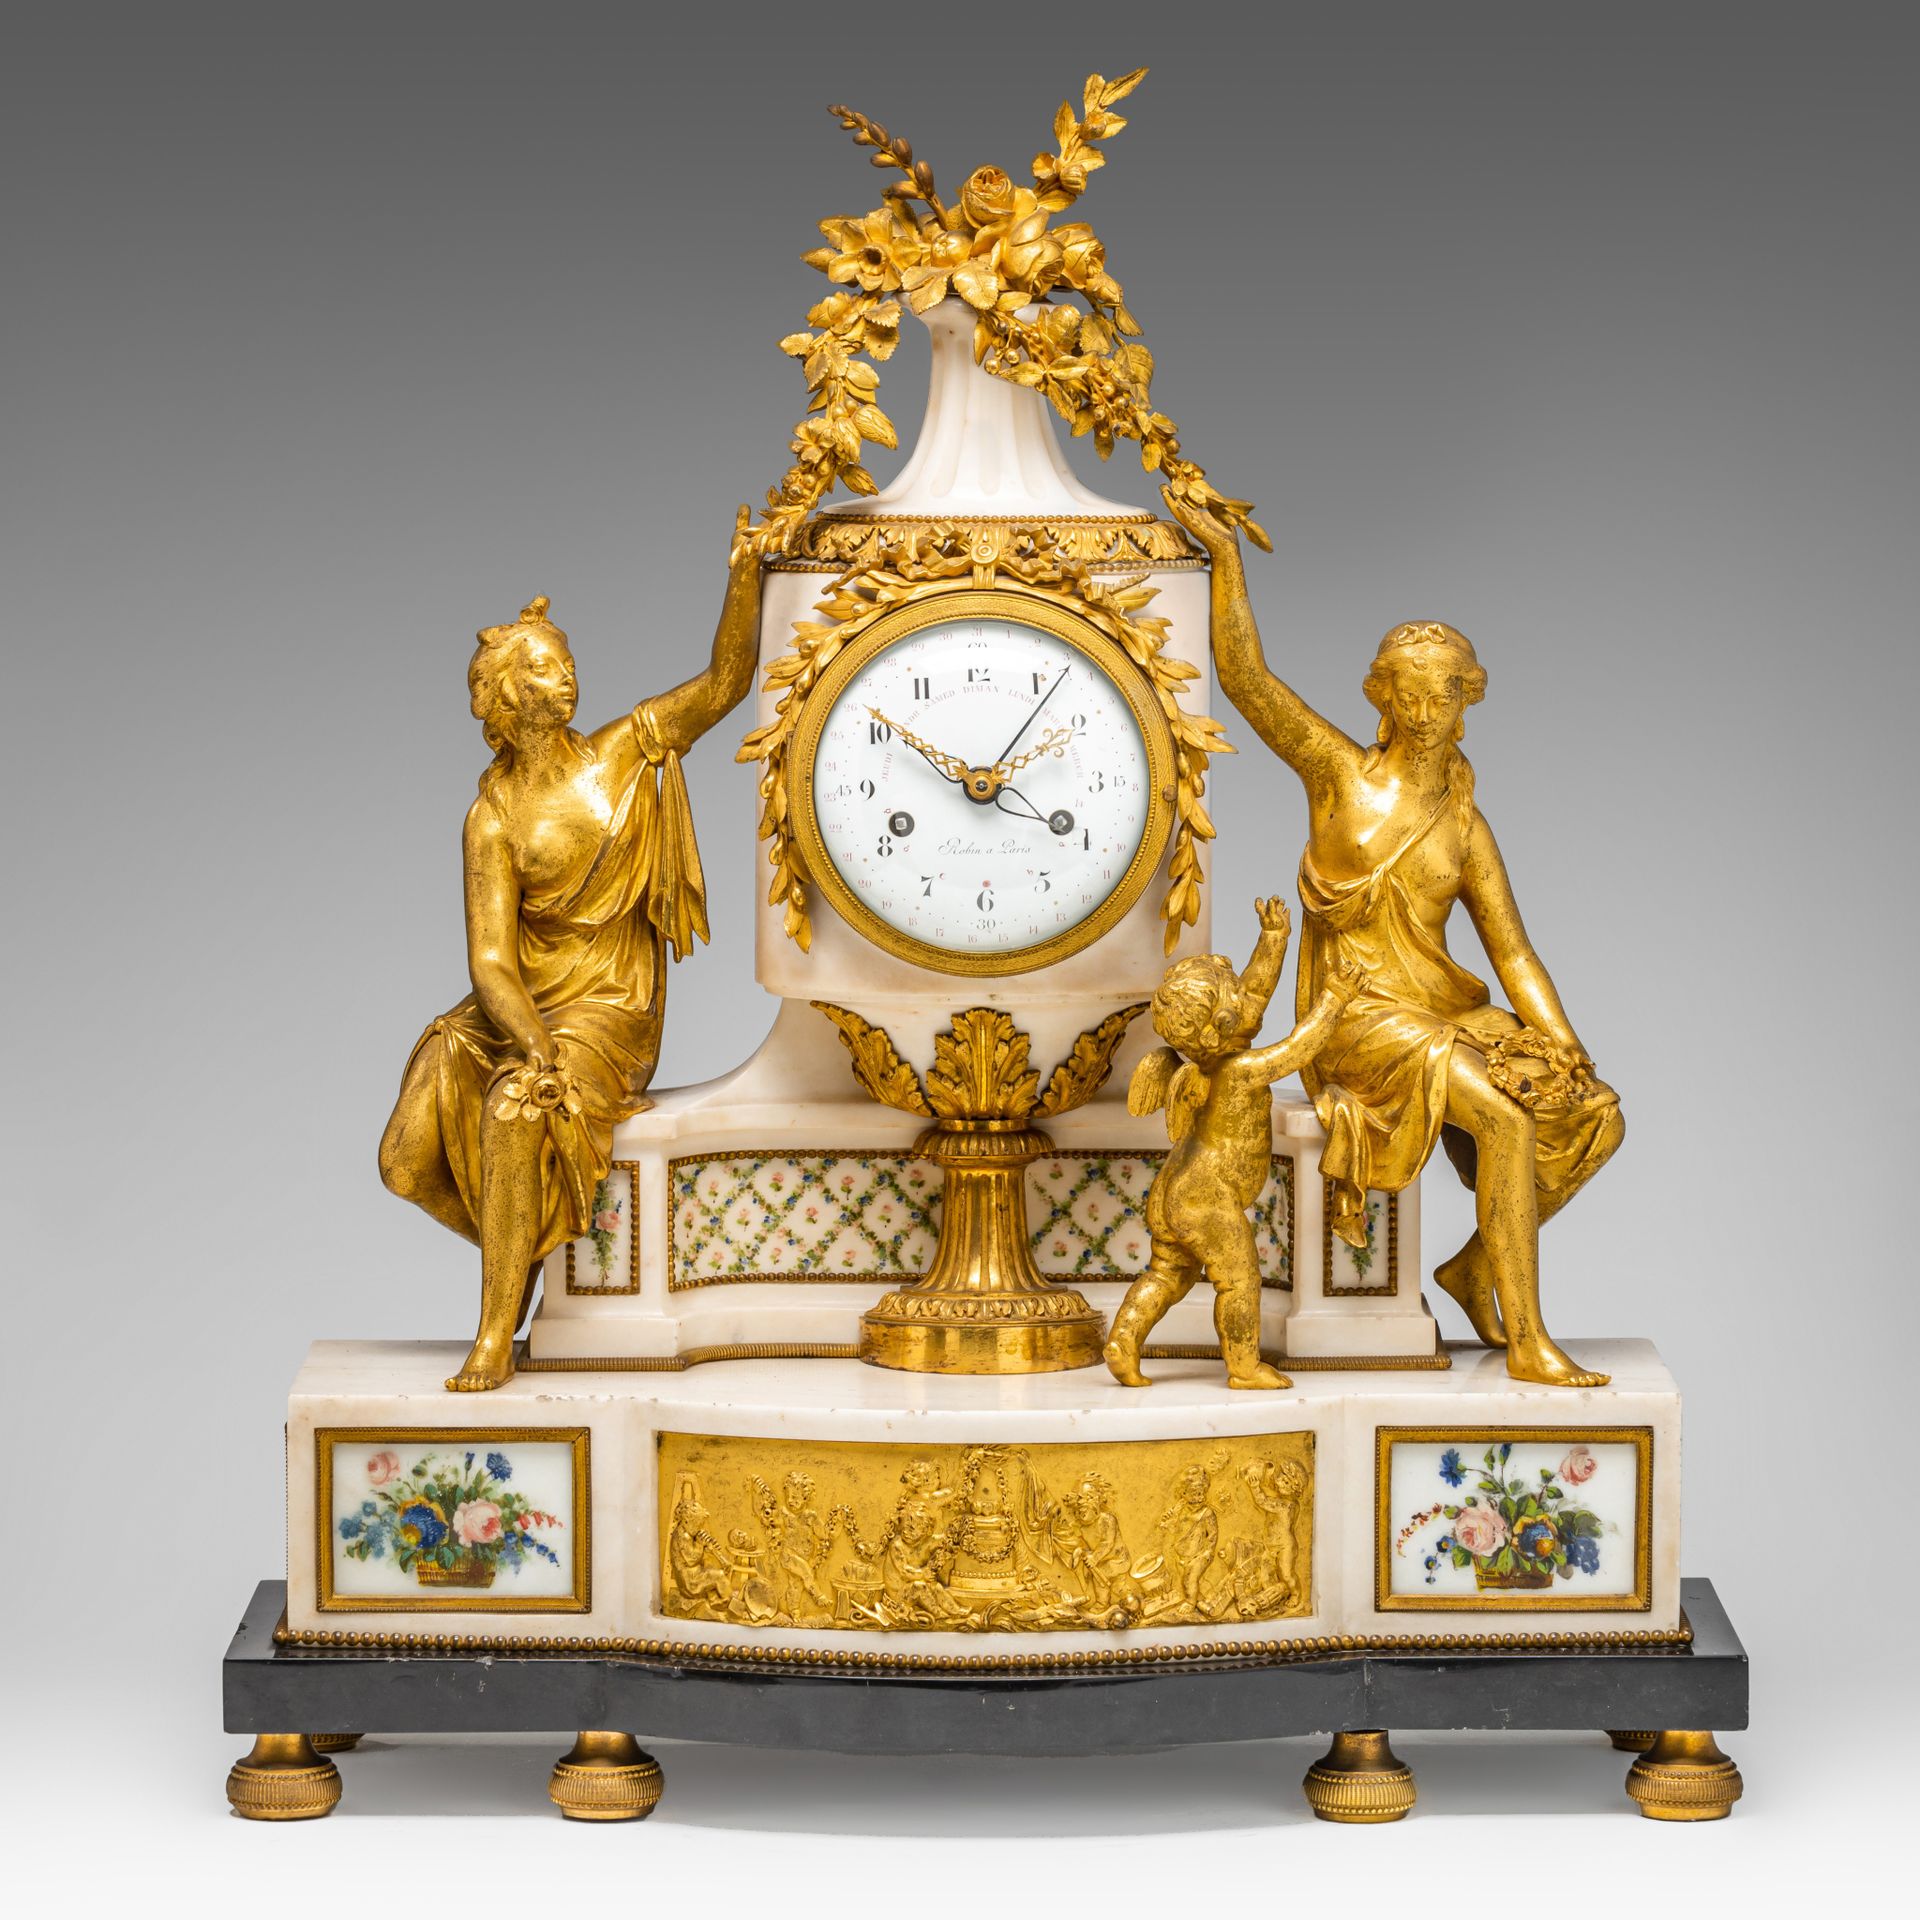 Đồng hồ ormolu phong cách Louis XVI tráng lệ thế kỷ 19